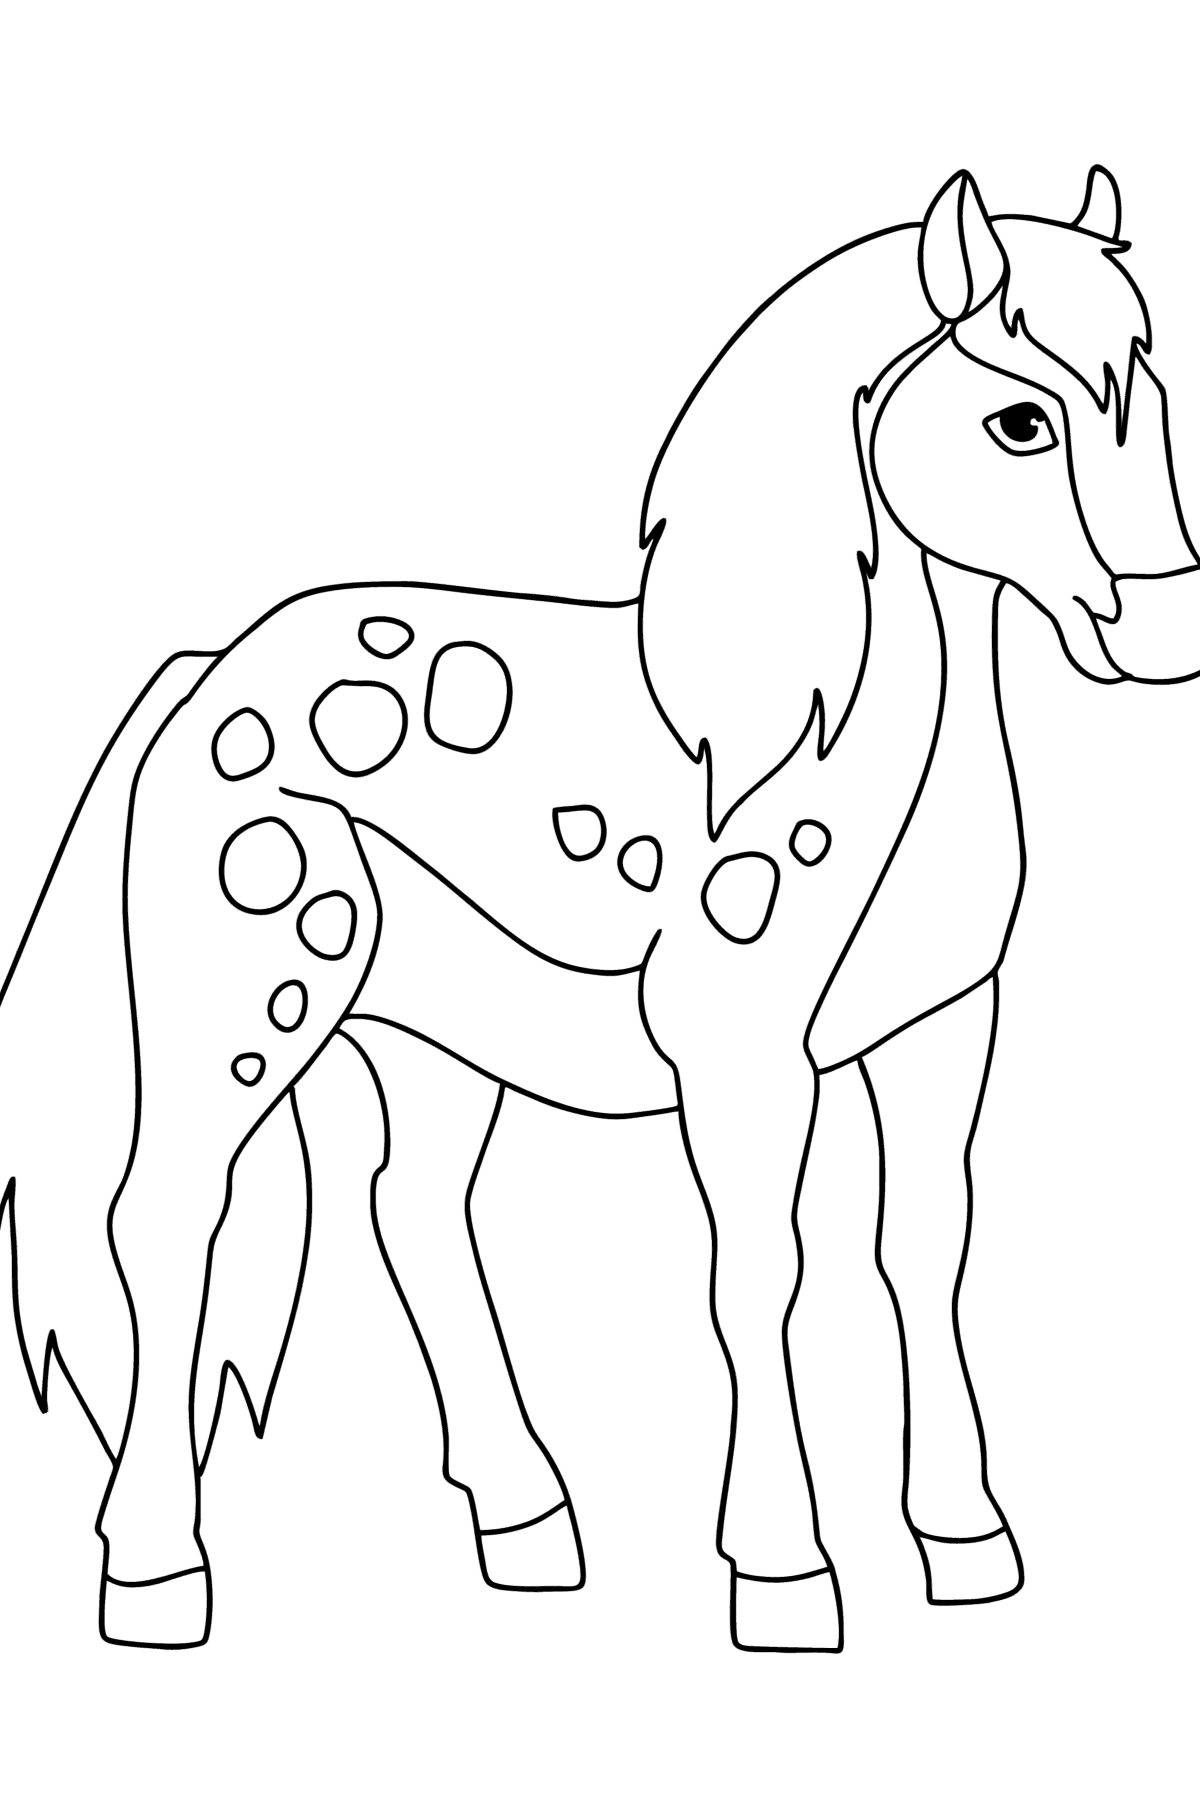 Mewarnai gambar Kuda poni asli - Mewarnai gambar untuk anak-anak